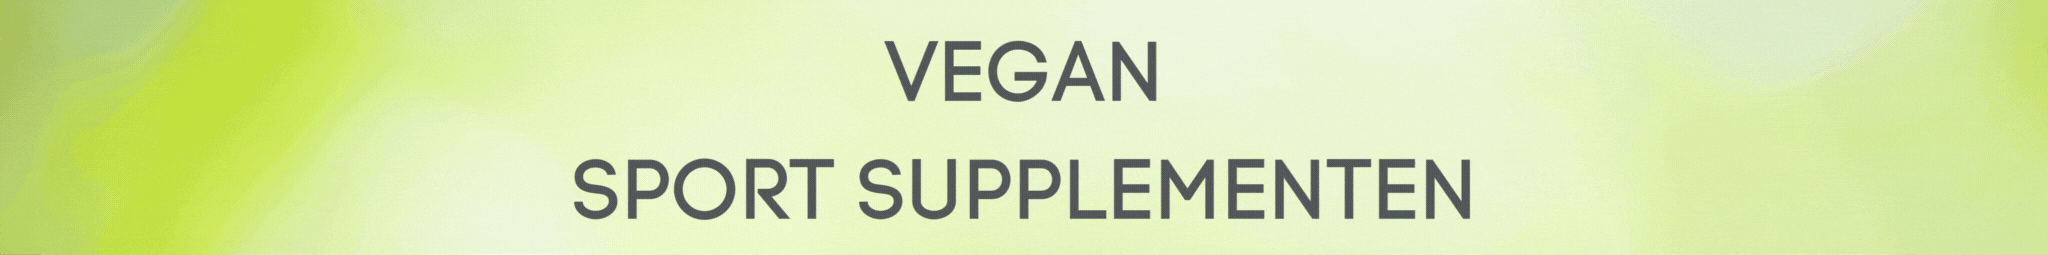 vegan supplementen image